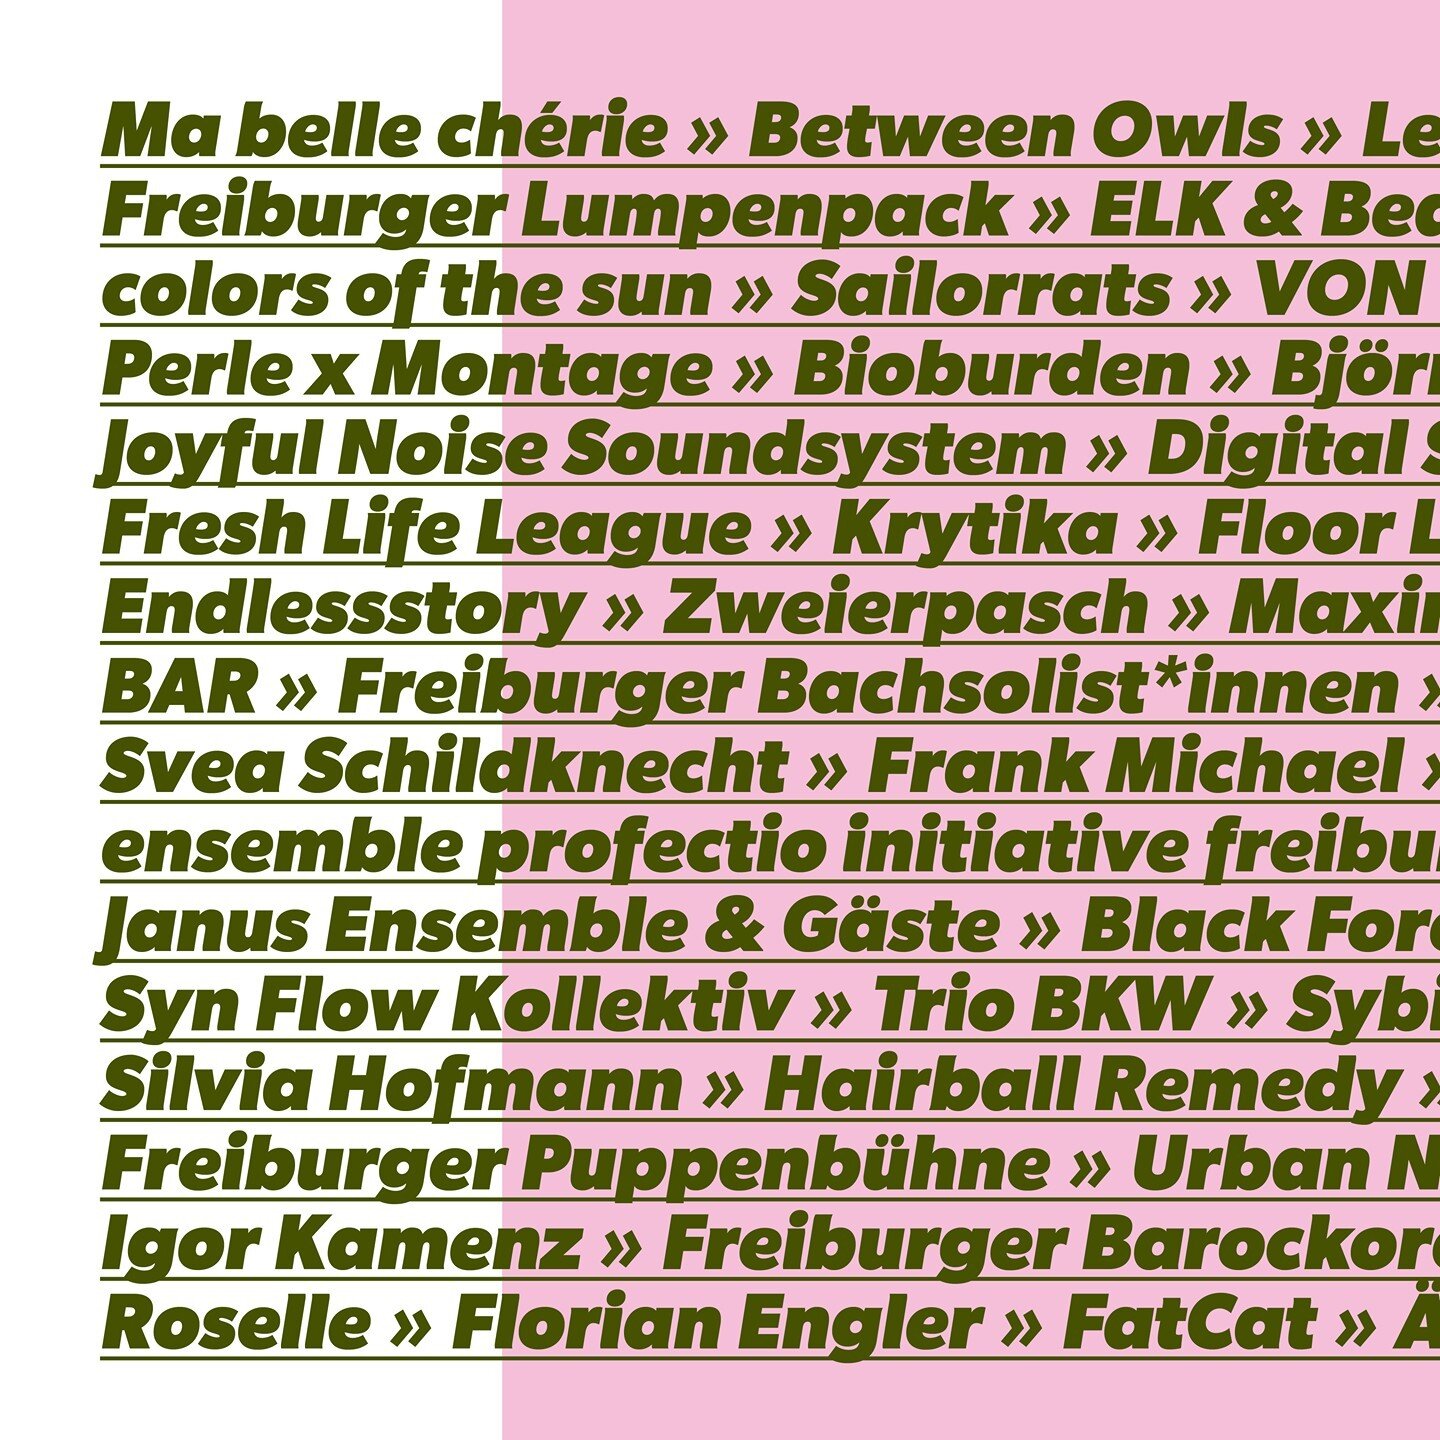 Vom 05. bis 16. August zeigt Freiburg mit dem Kultur_Los! Festival, wie live laut und lebendig es ist! 💃 

Zw&ouml;lf intensive Tage mit 36 tollen Veranstaltungen, ein Programm mit 100 einzigartigen K&uuml;nstler*innen, Bands und Ensembles &ndash; g